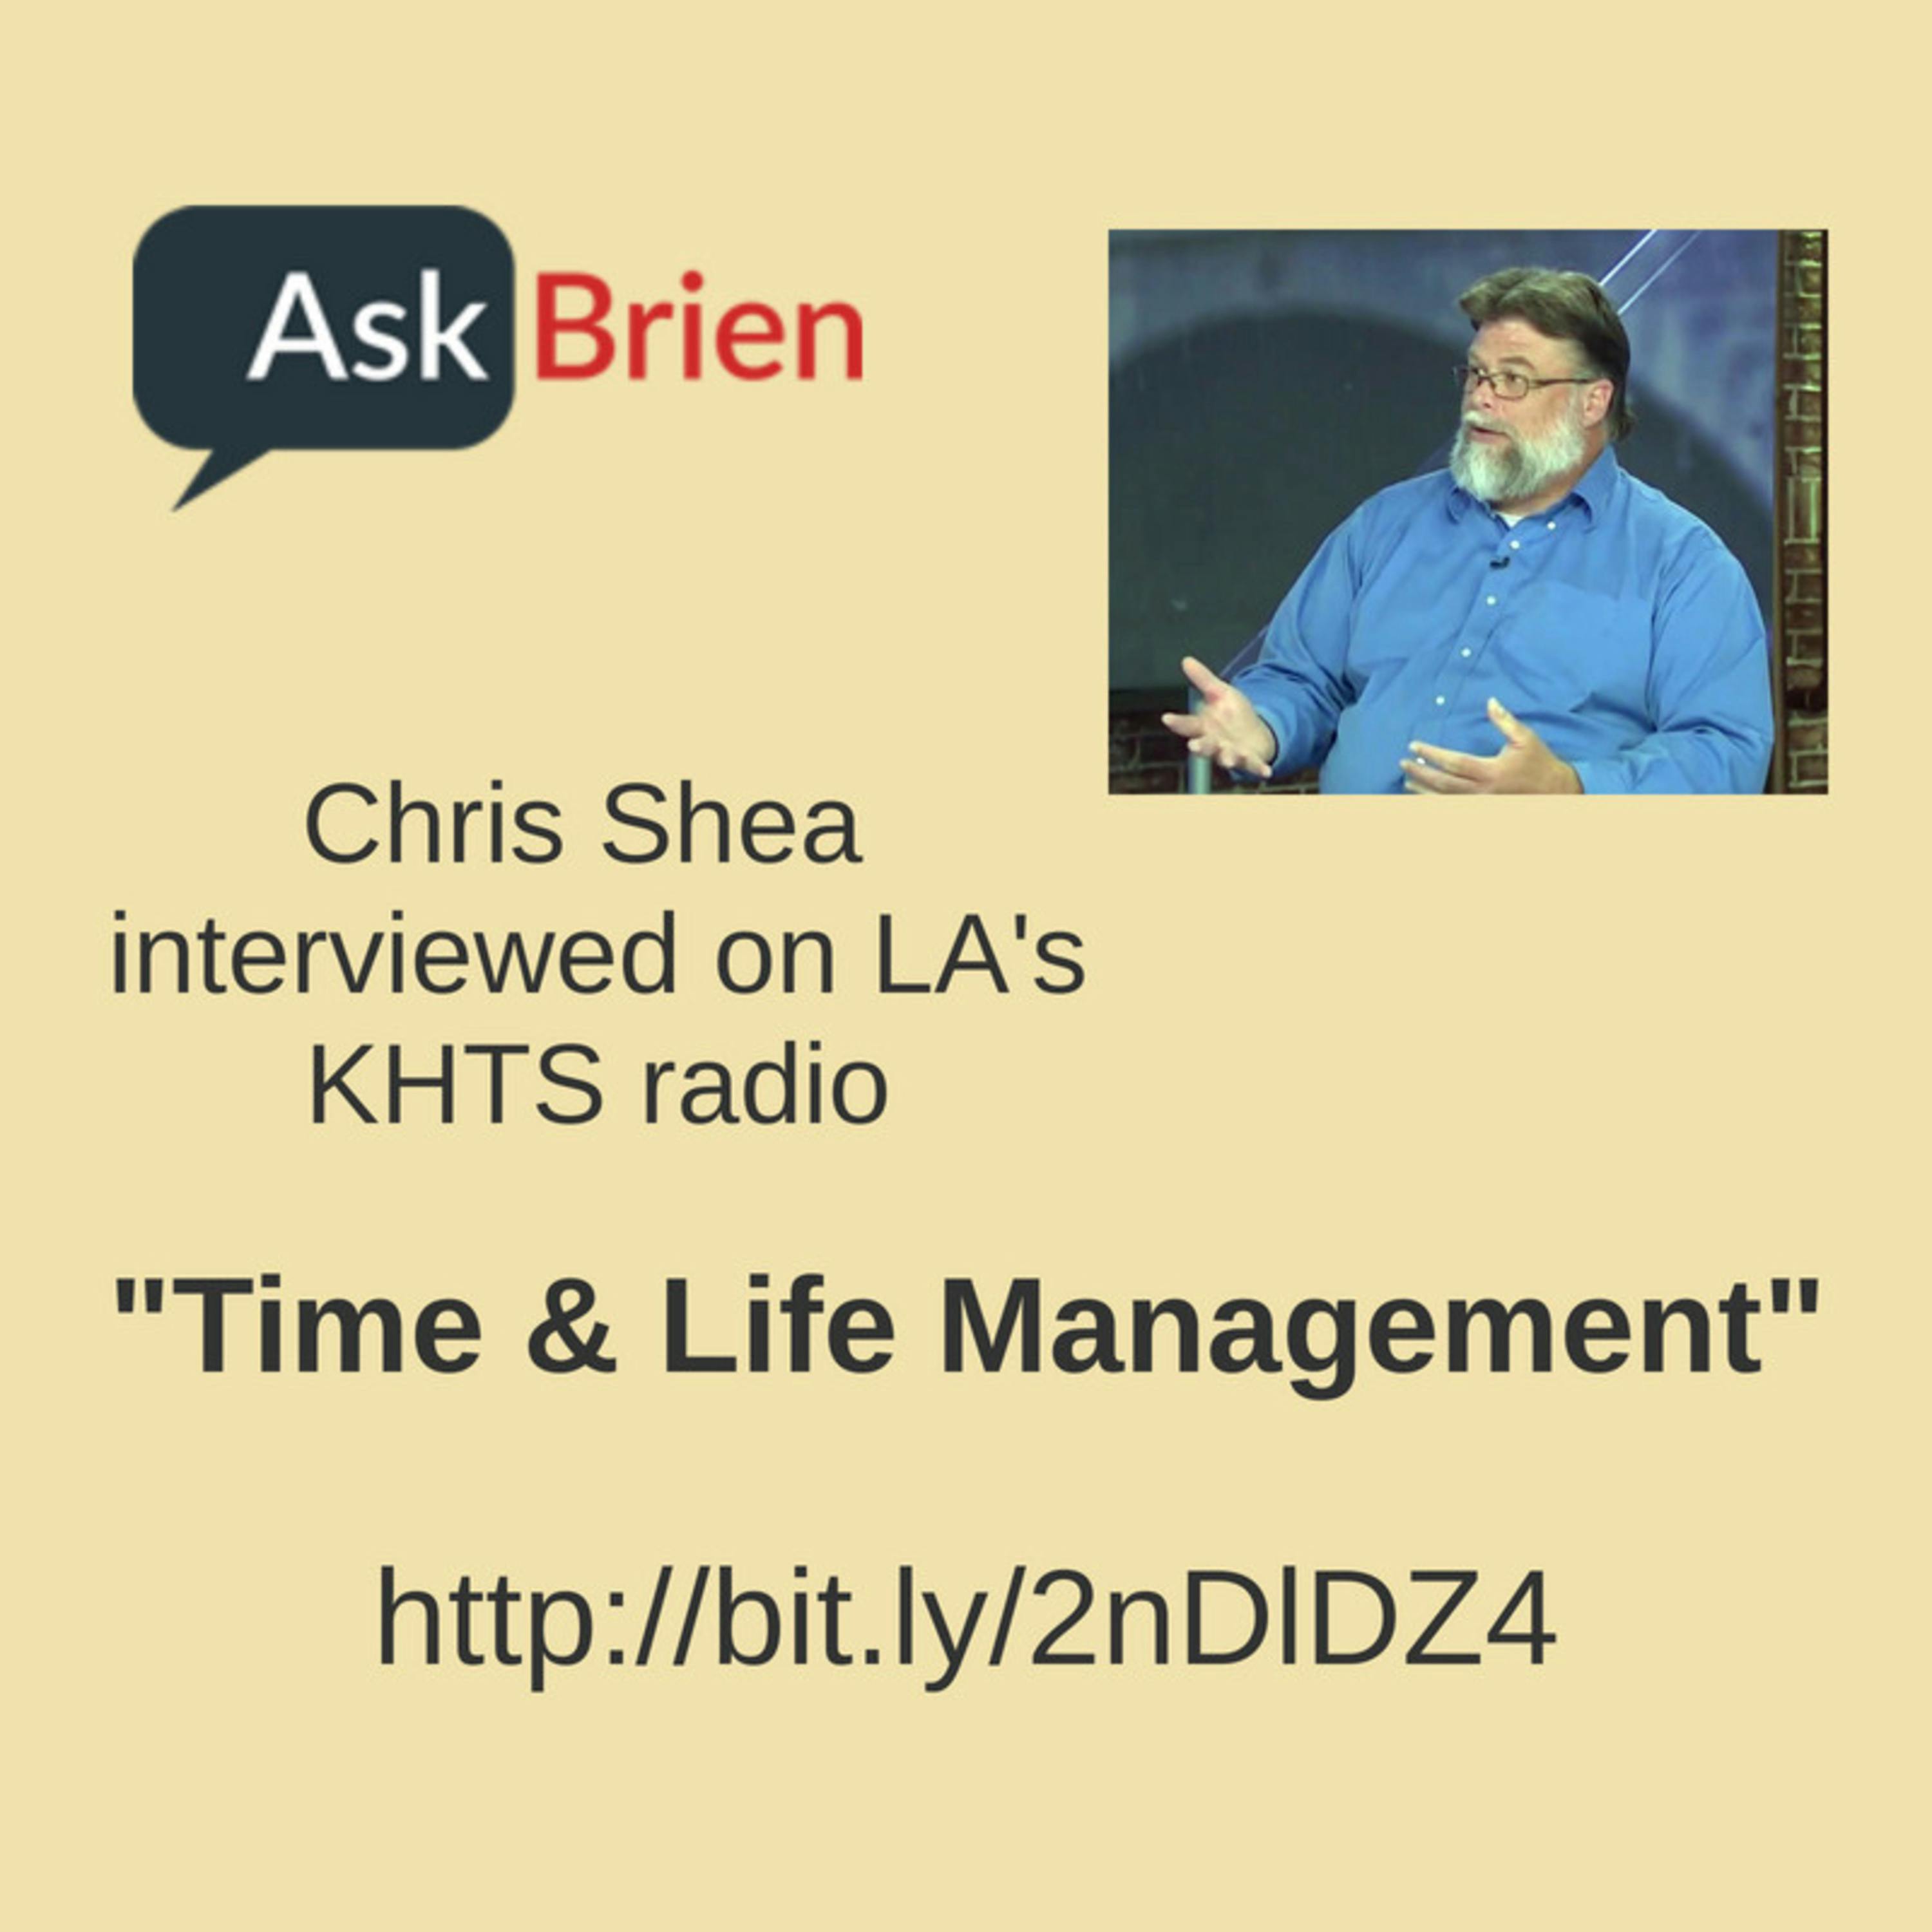 Life Management - Chris Shea on Ask Brien Show